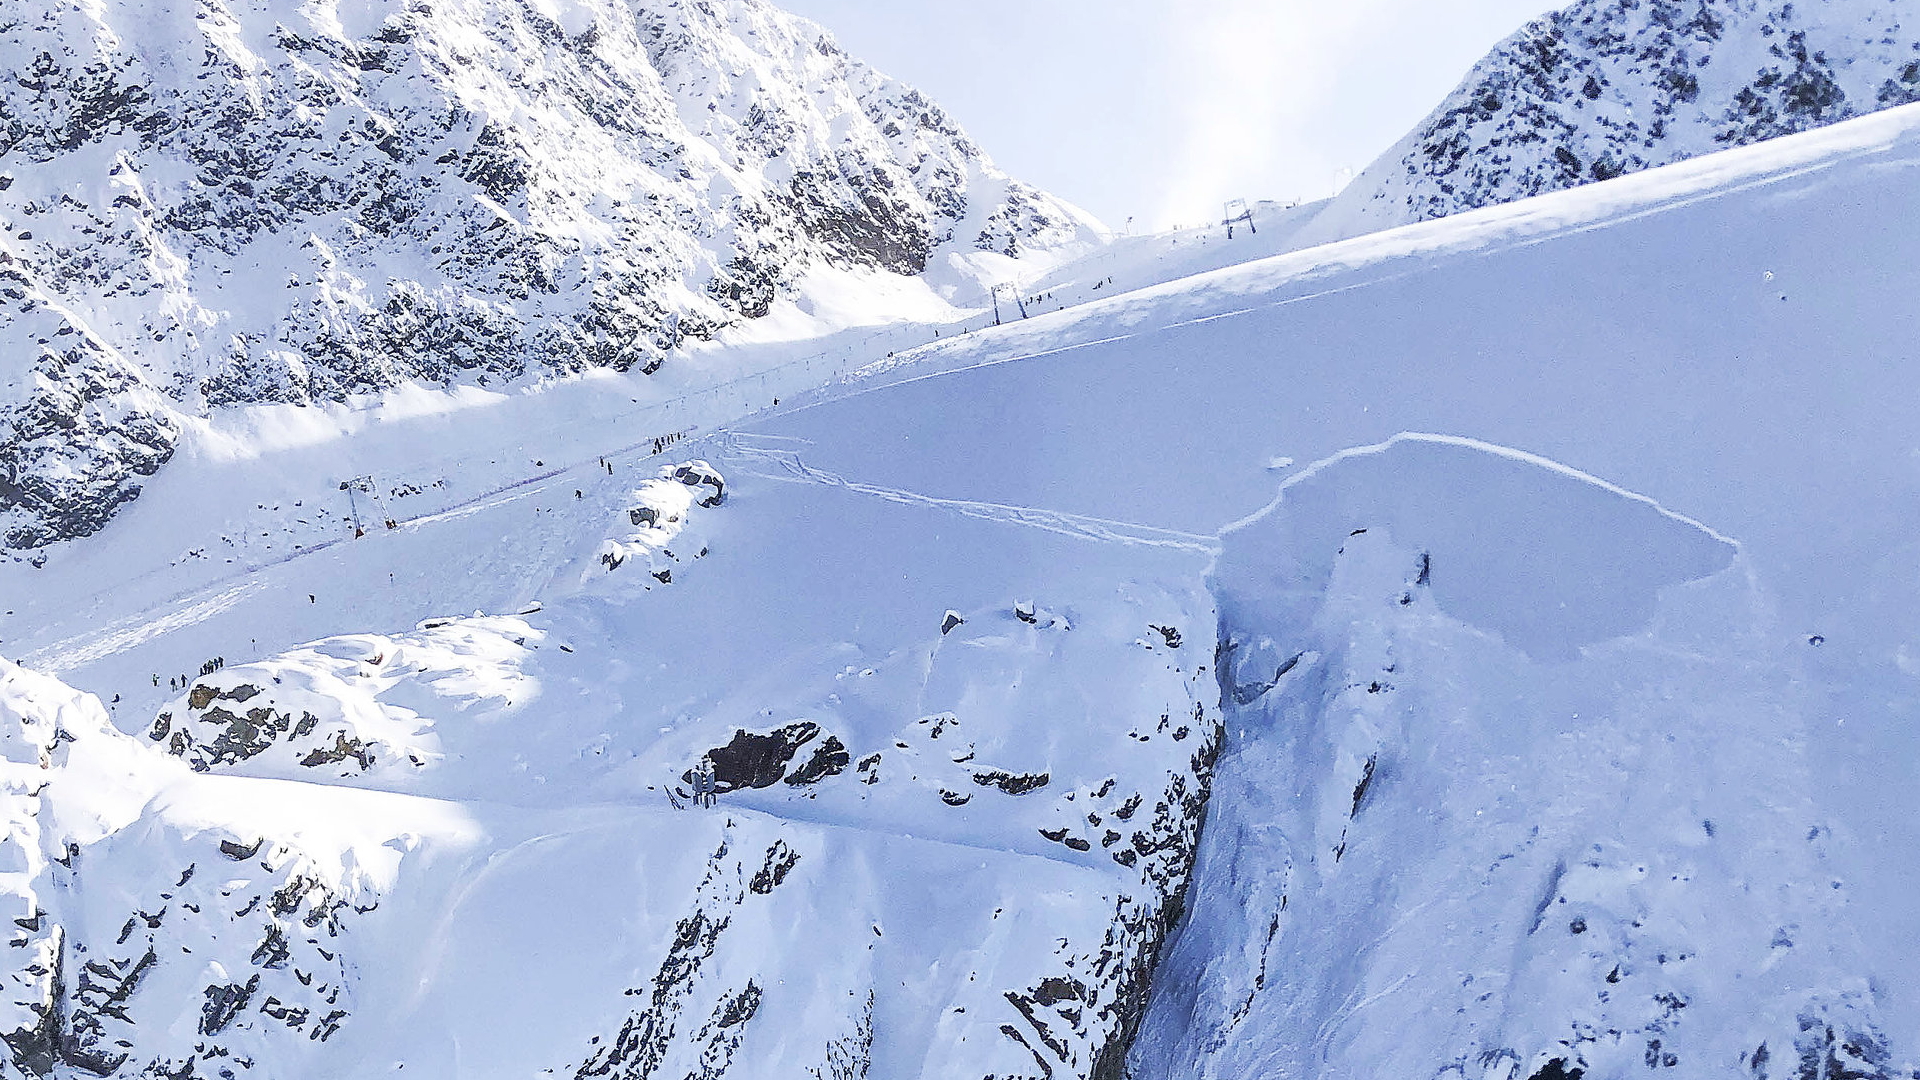 Die Abrisskante des Schneebretts, das die beiden Skifahrer verschüttet hat | dpa